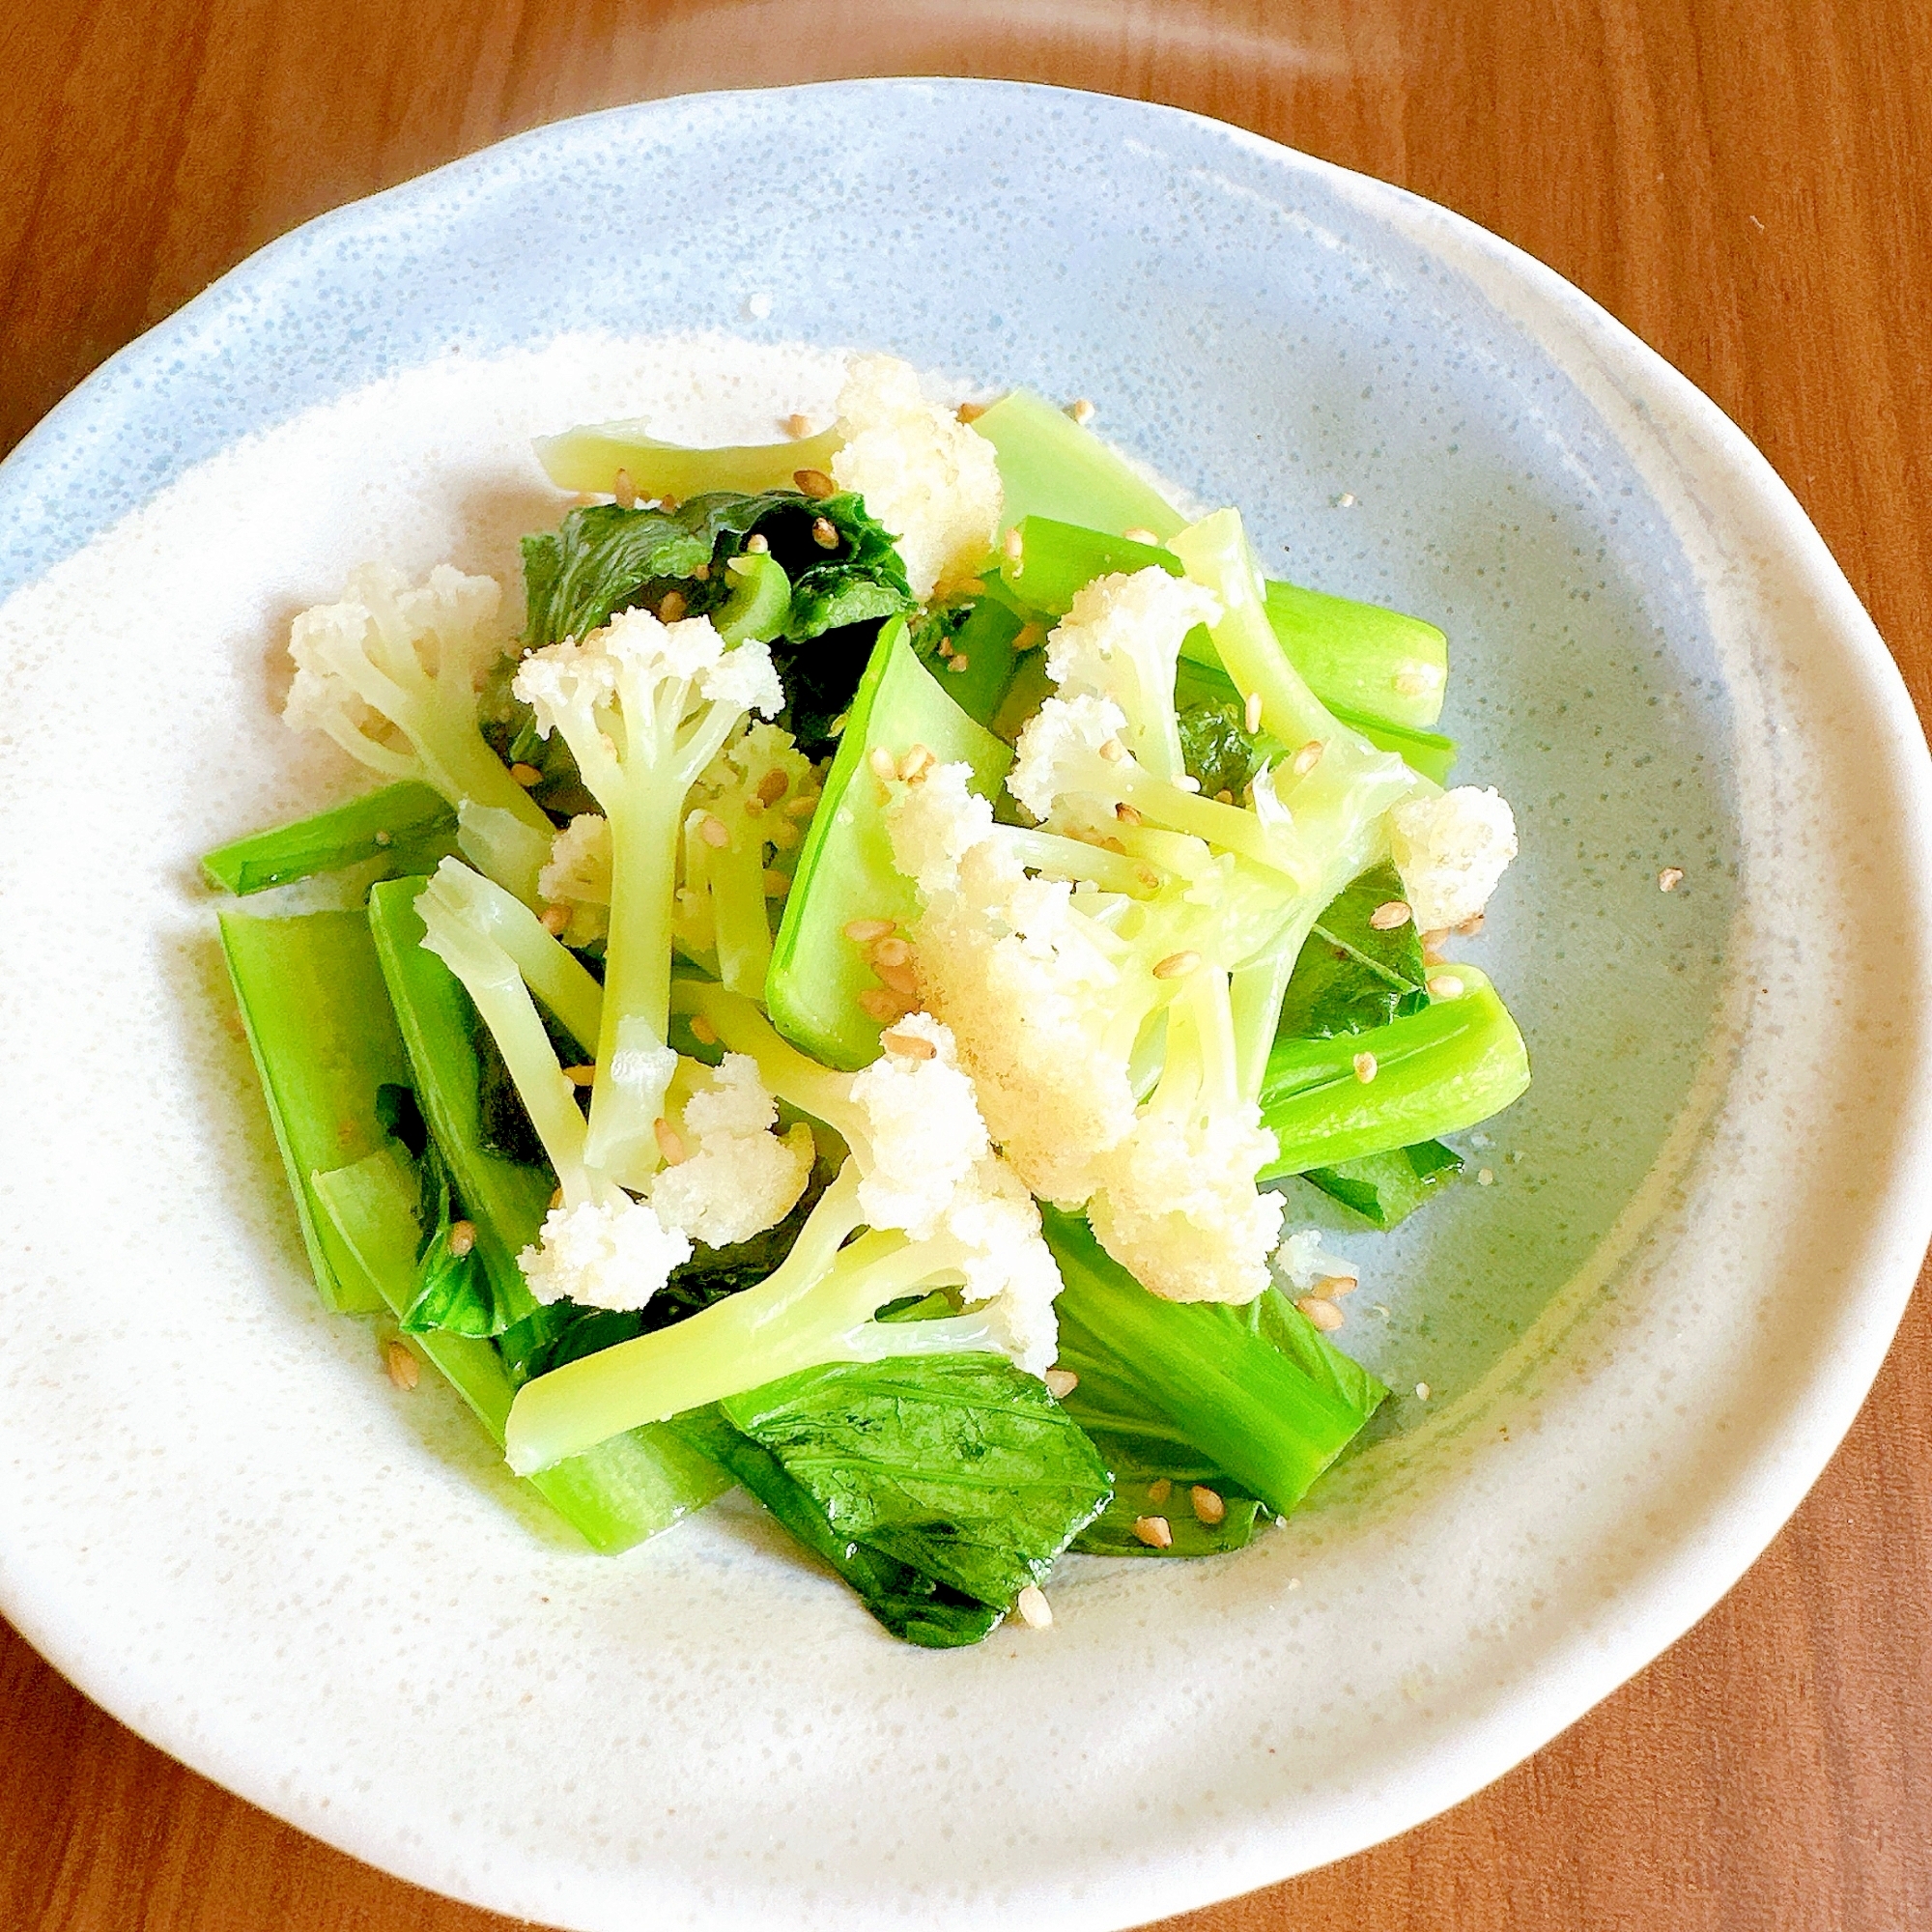 カリフラワーと小松菜の温サラダ ⋱⚘⋰ ⋱⚘⋰